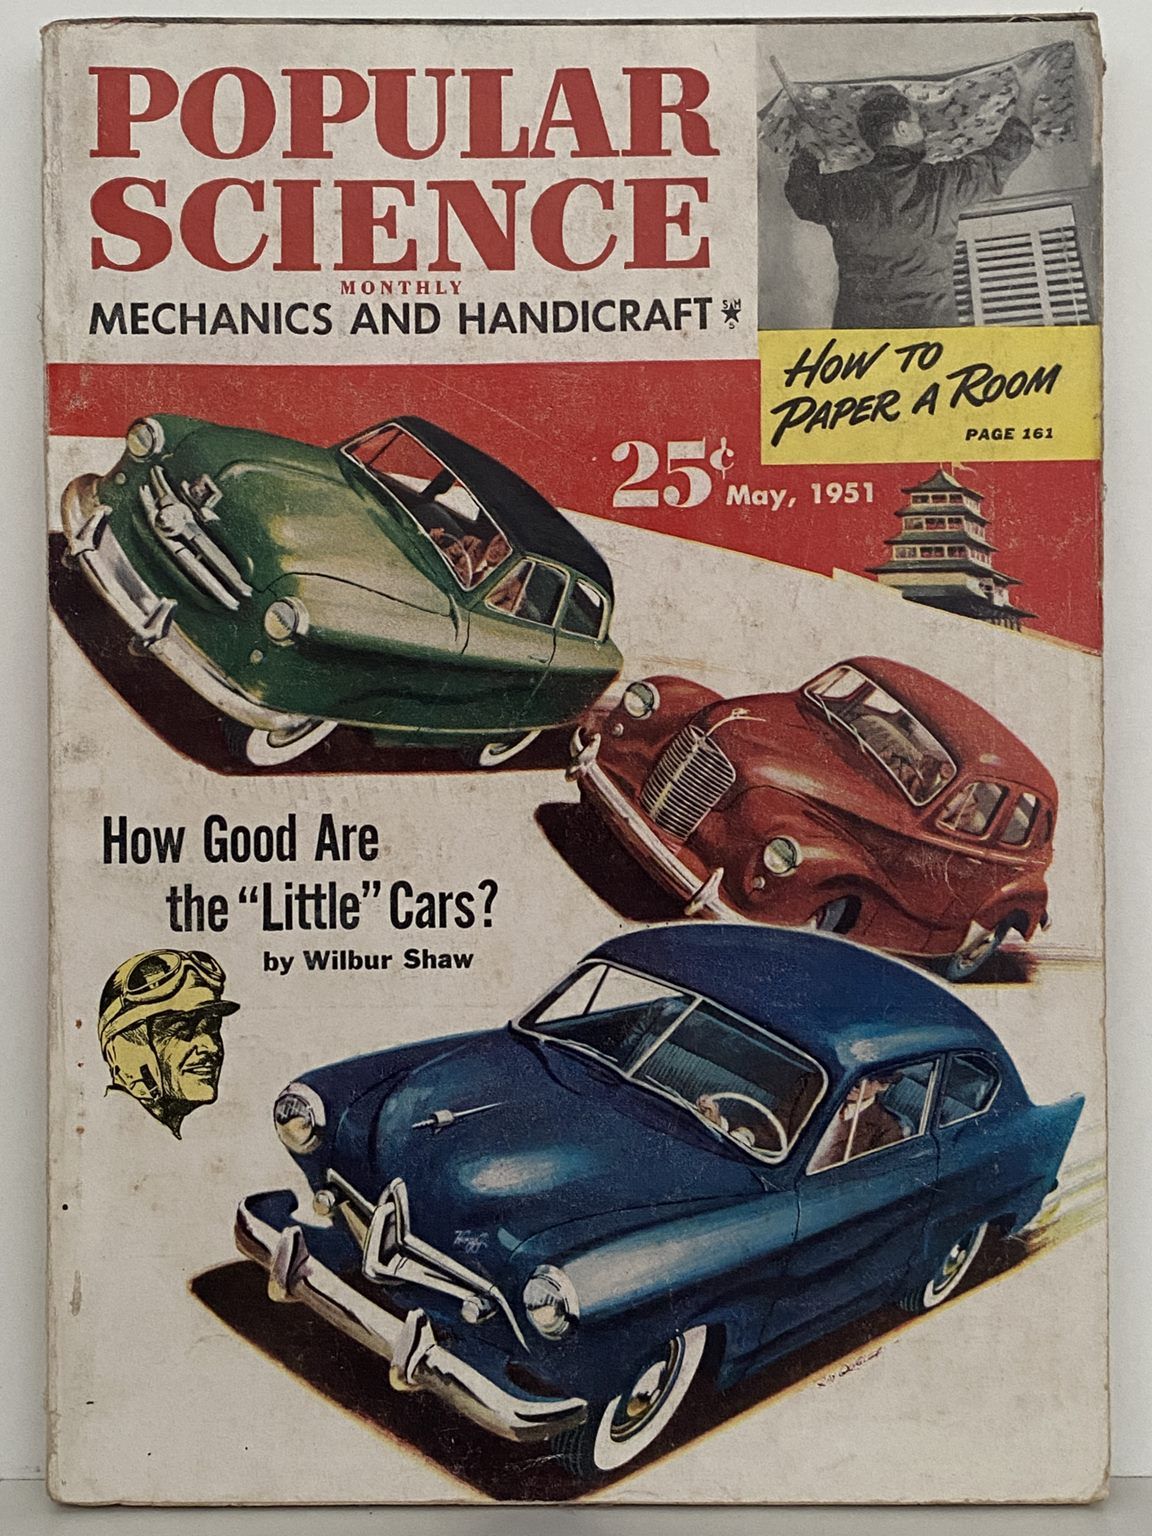 VINTAGE MAGAZINE: Popular Science, Vol. 158, No. 5 - May 1951